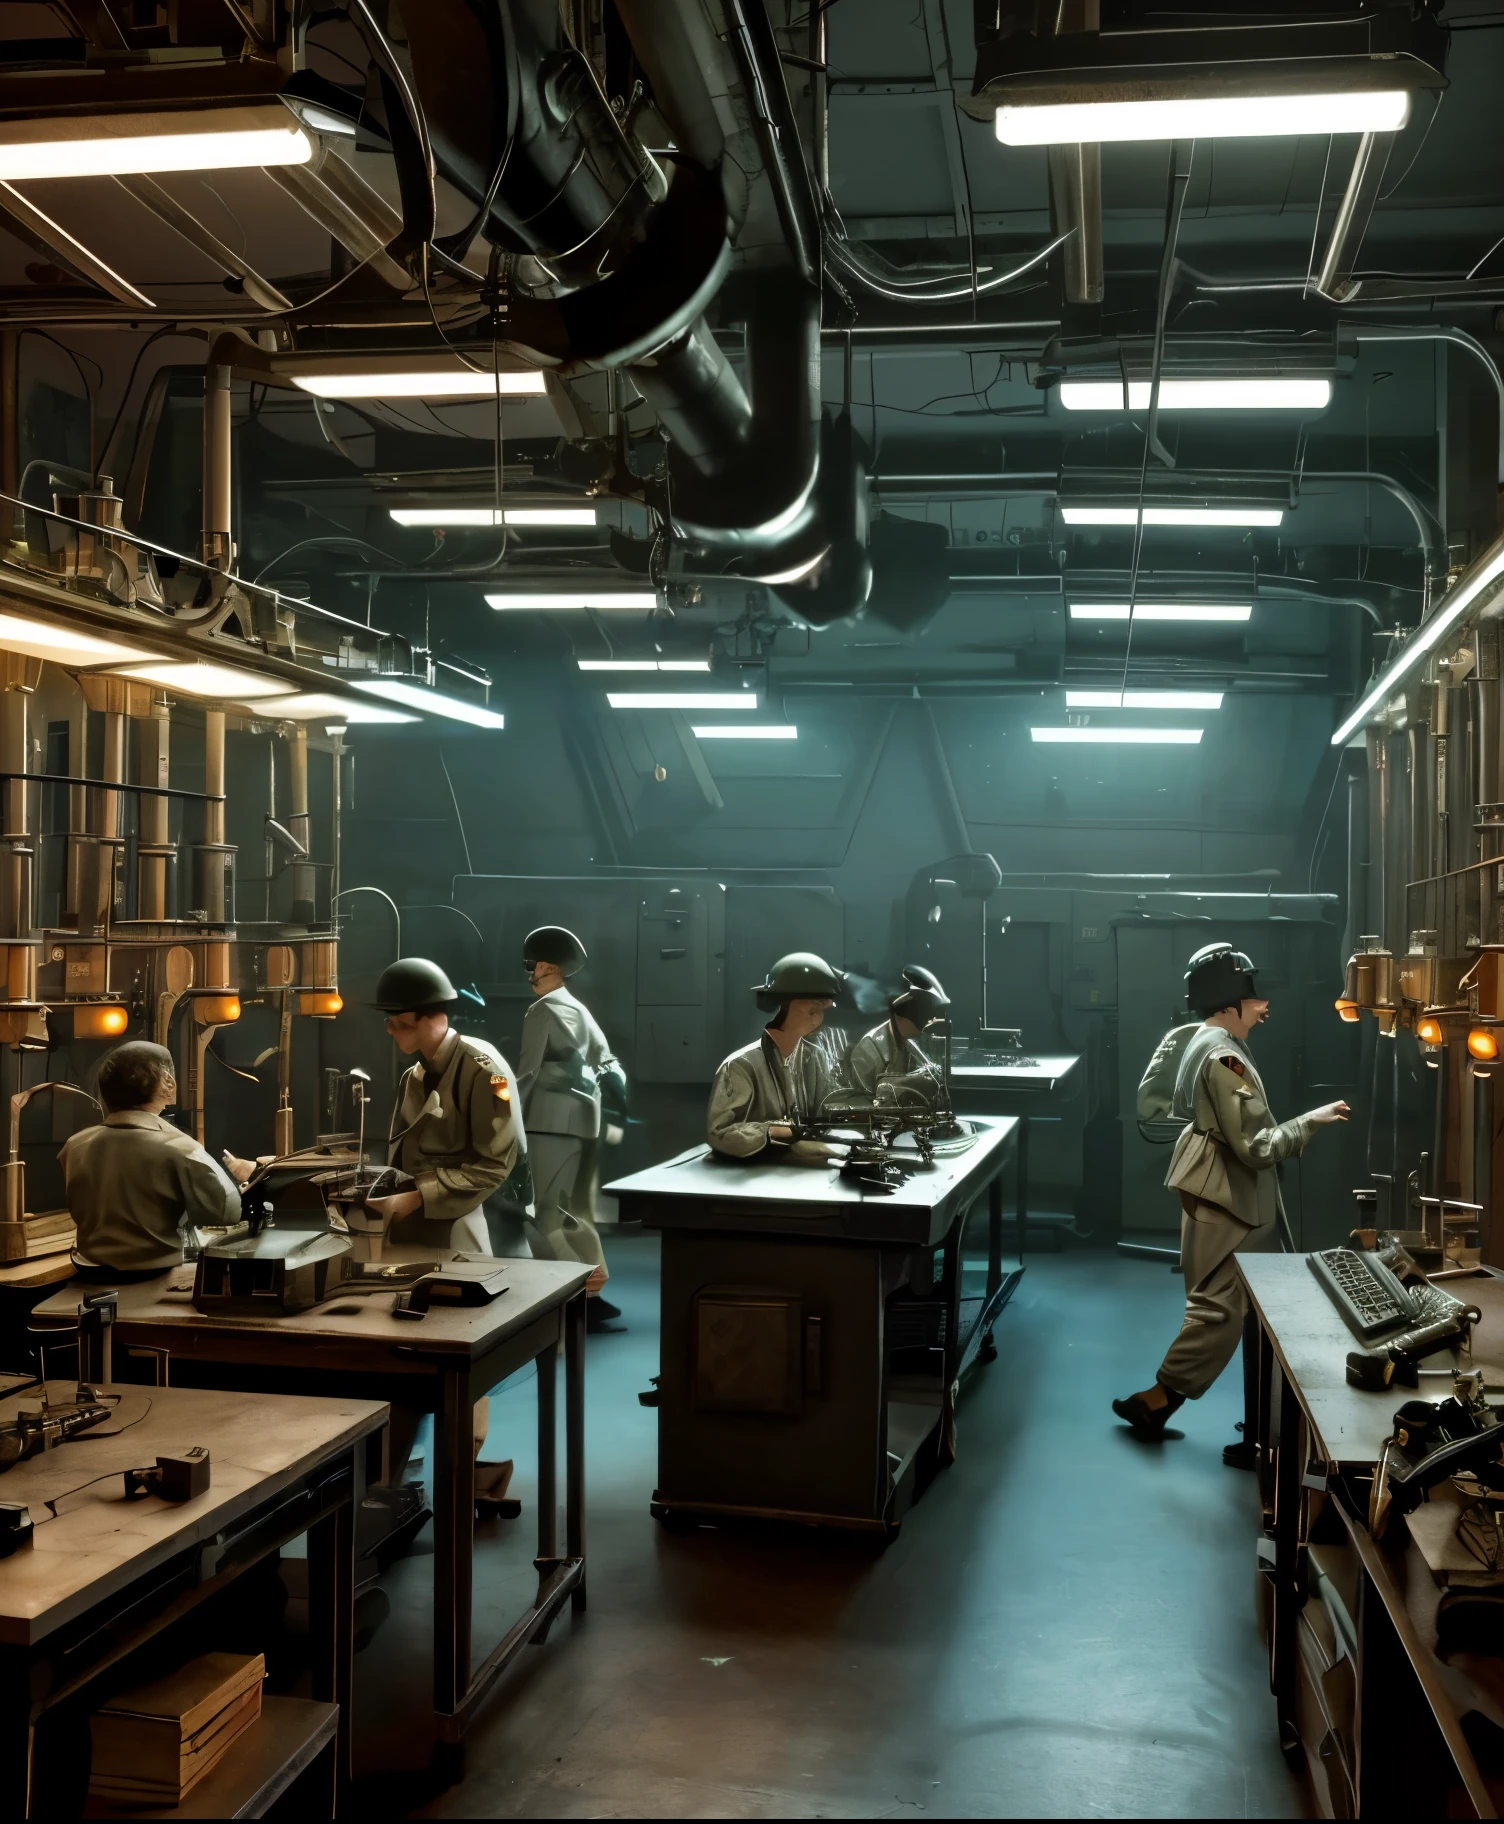  Una escena de ciencia ficción retro de la Segunda Guerra Mundial con cerebros alineados sobre una mesa de laboratorio, rodeado de equipos científicos antiguos y luces parpadeantes